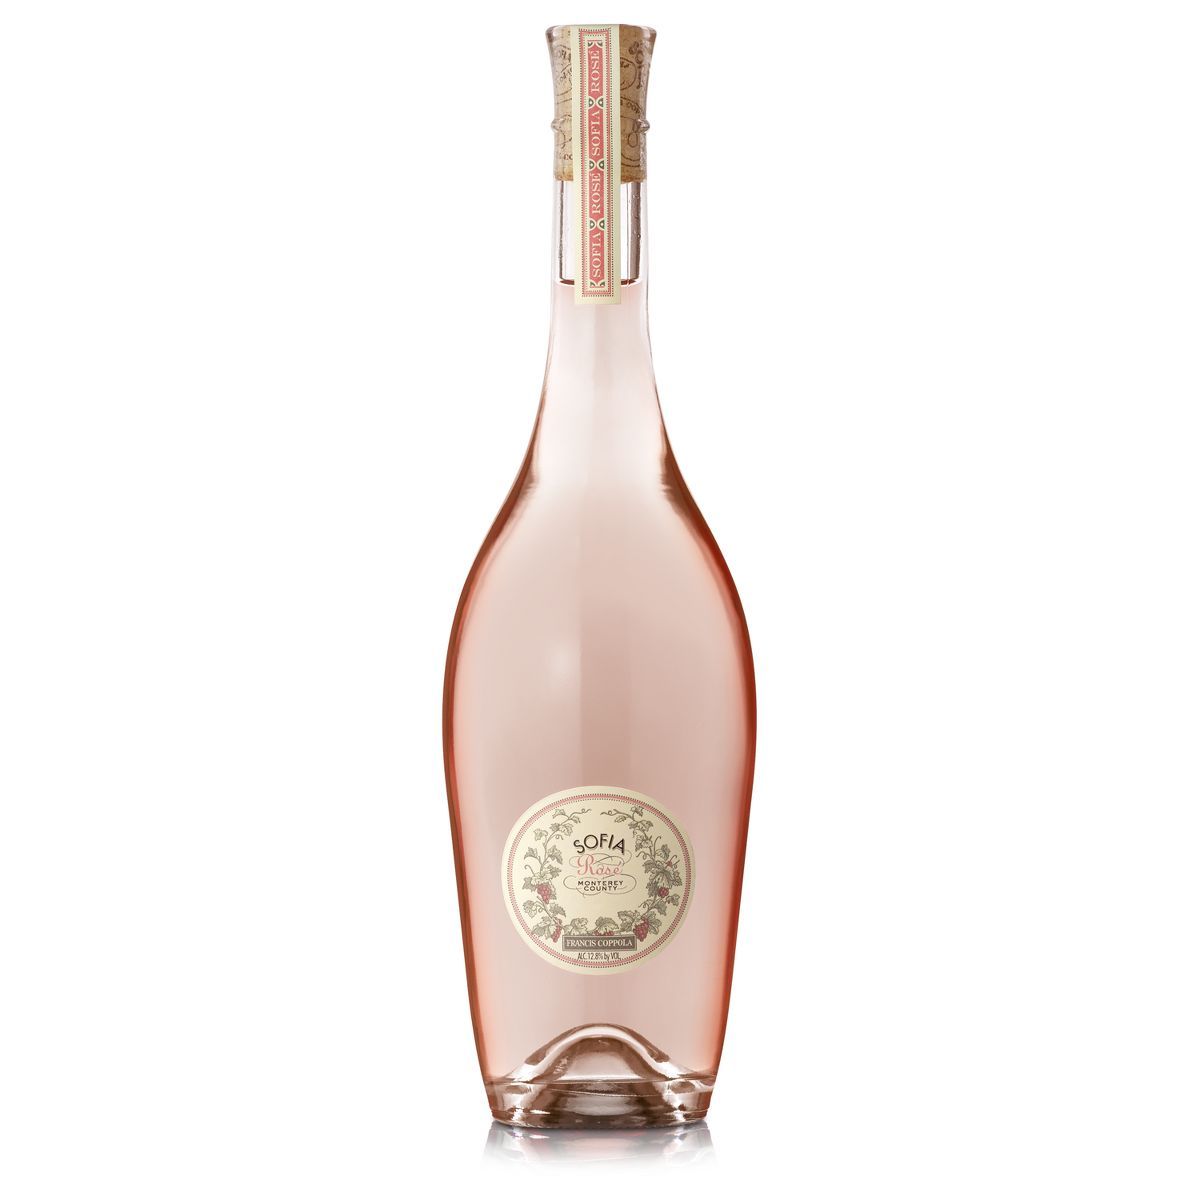 Francis Coppola Sofia Rosé Wine - 750ml Bottle | Target